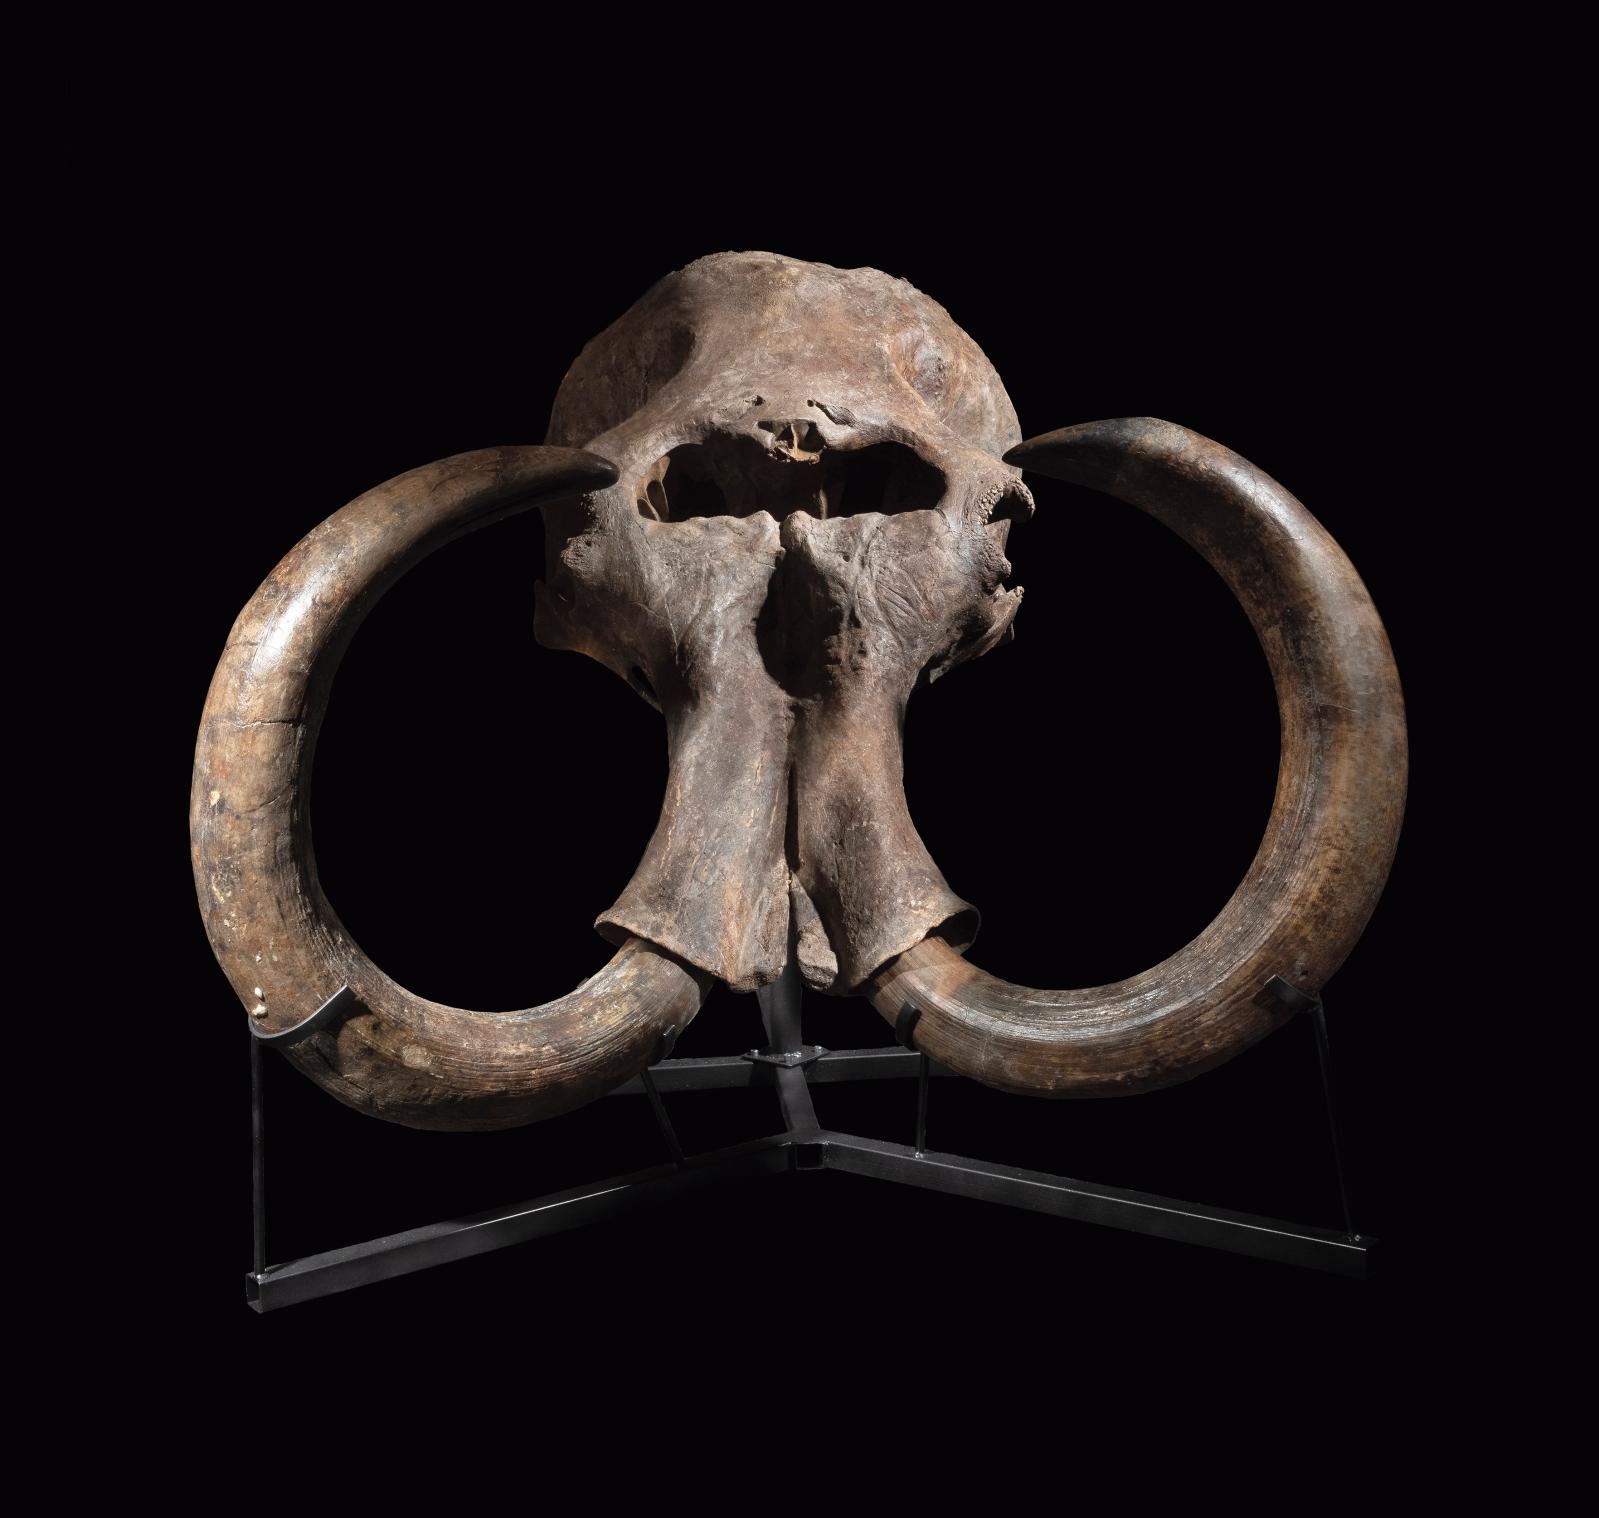 Après le tricératops, plus grand spécimen connu de son espèce disparue, voici un crâne provenant d’un mammouth des steppes aux dimensions 